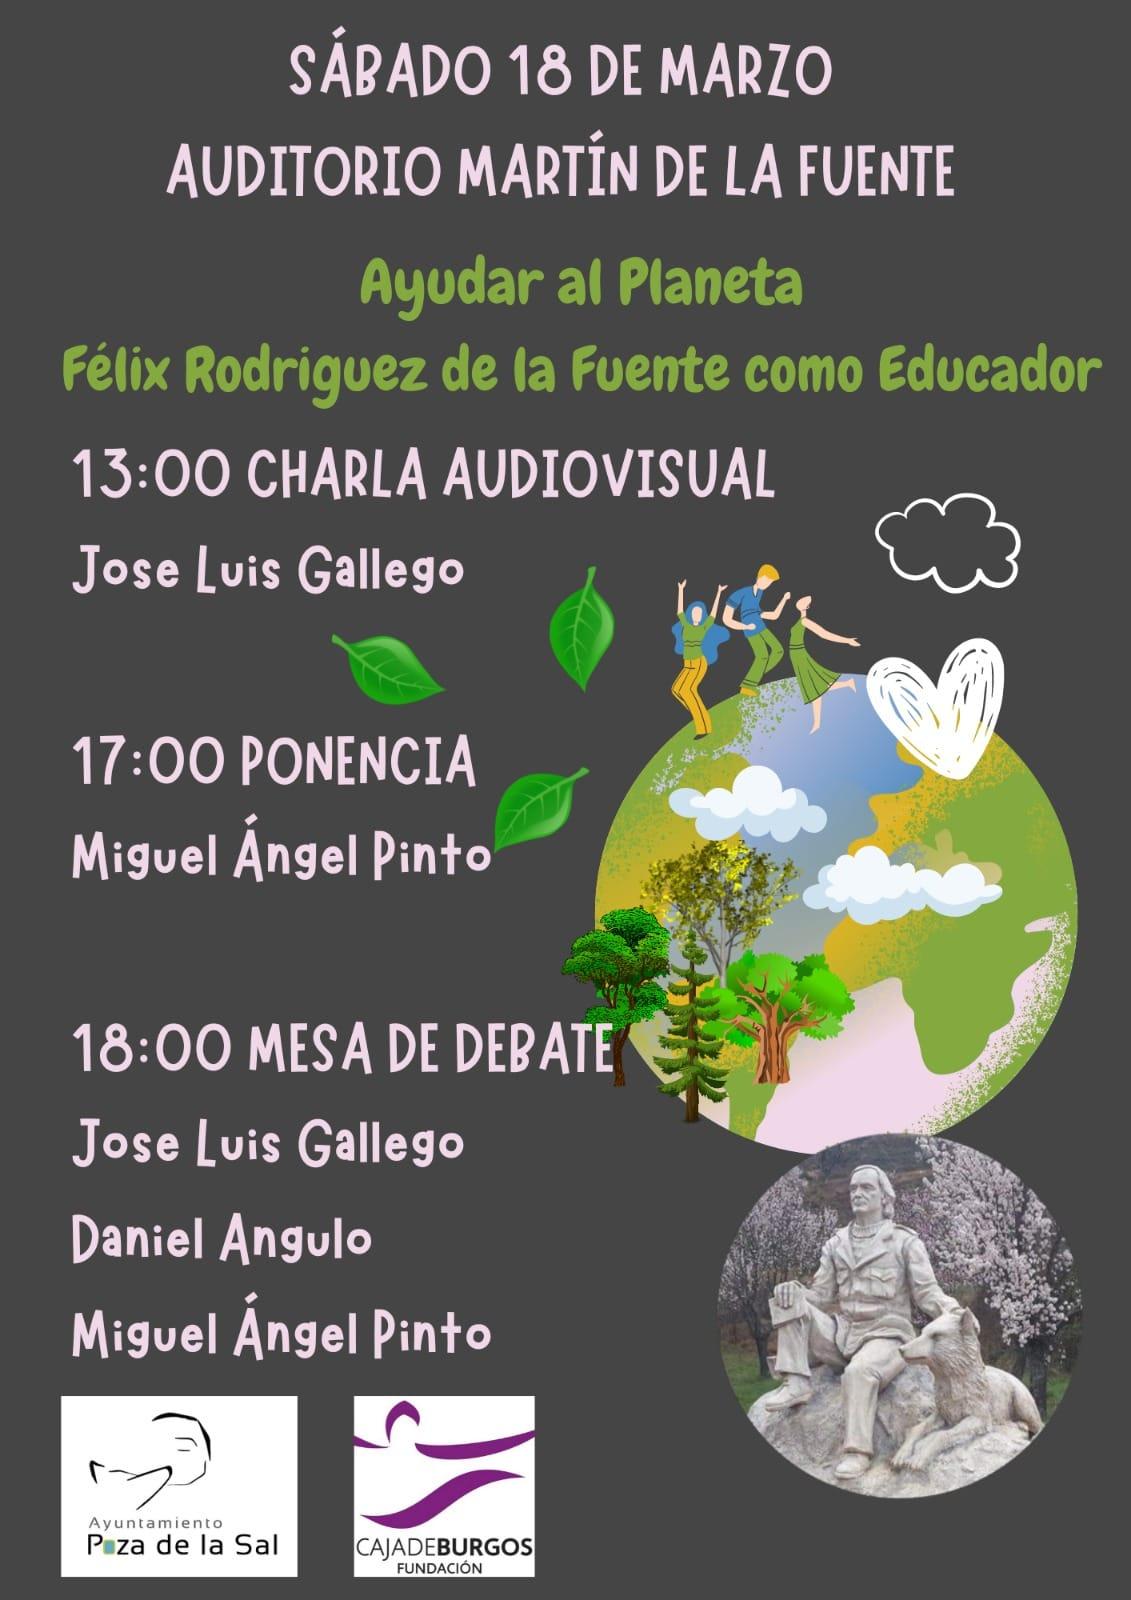 Ayudar al planeta, Félix Rodríguez de la Fuente como educador